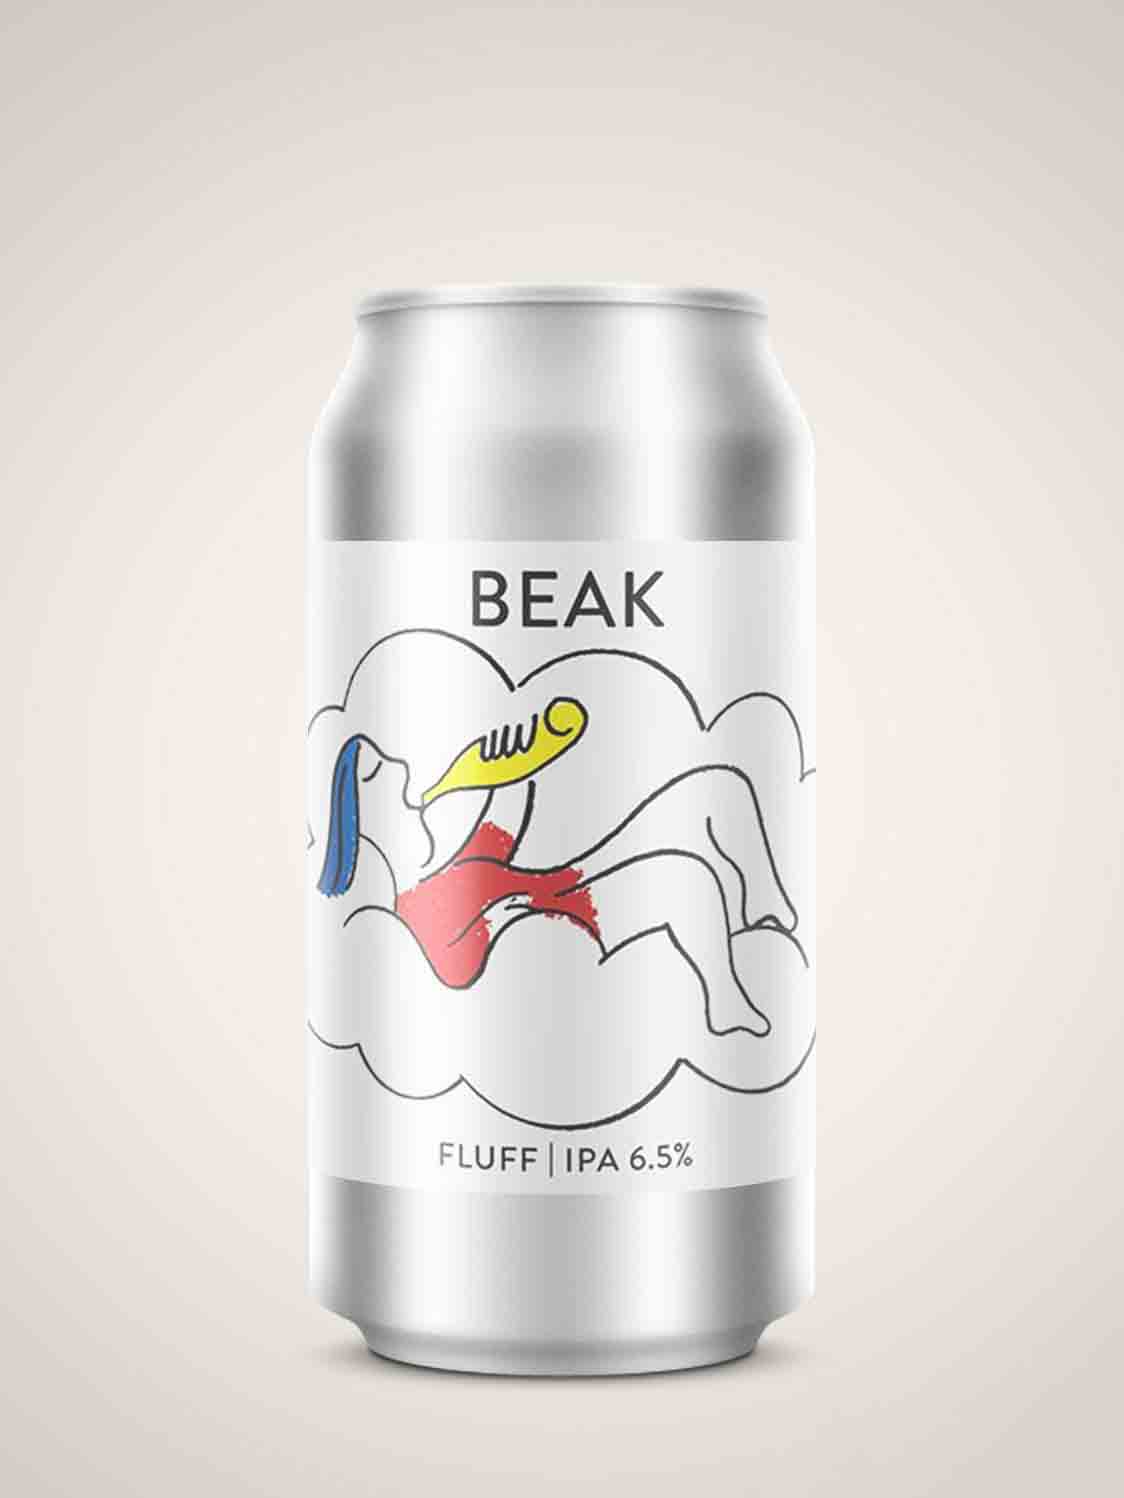 The Beak Brewery - Fluff NE IPA 6.5%